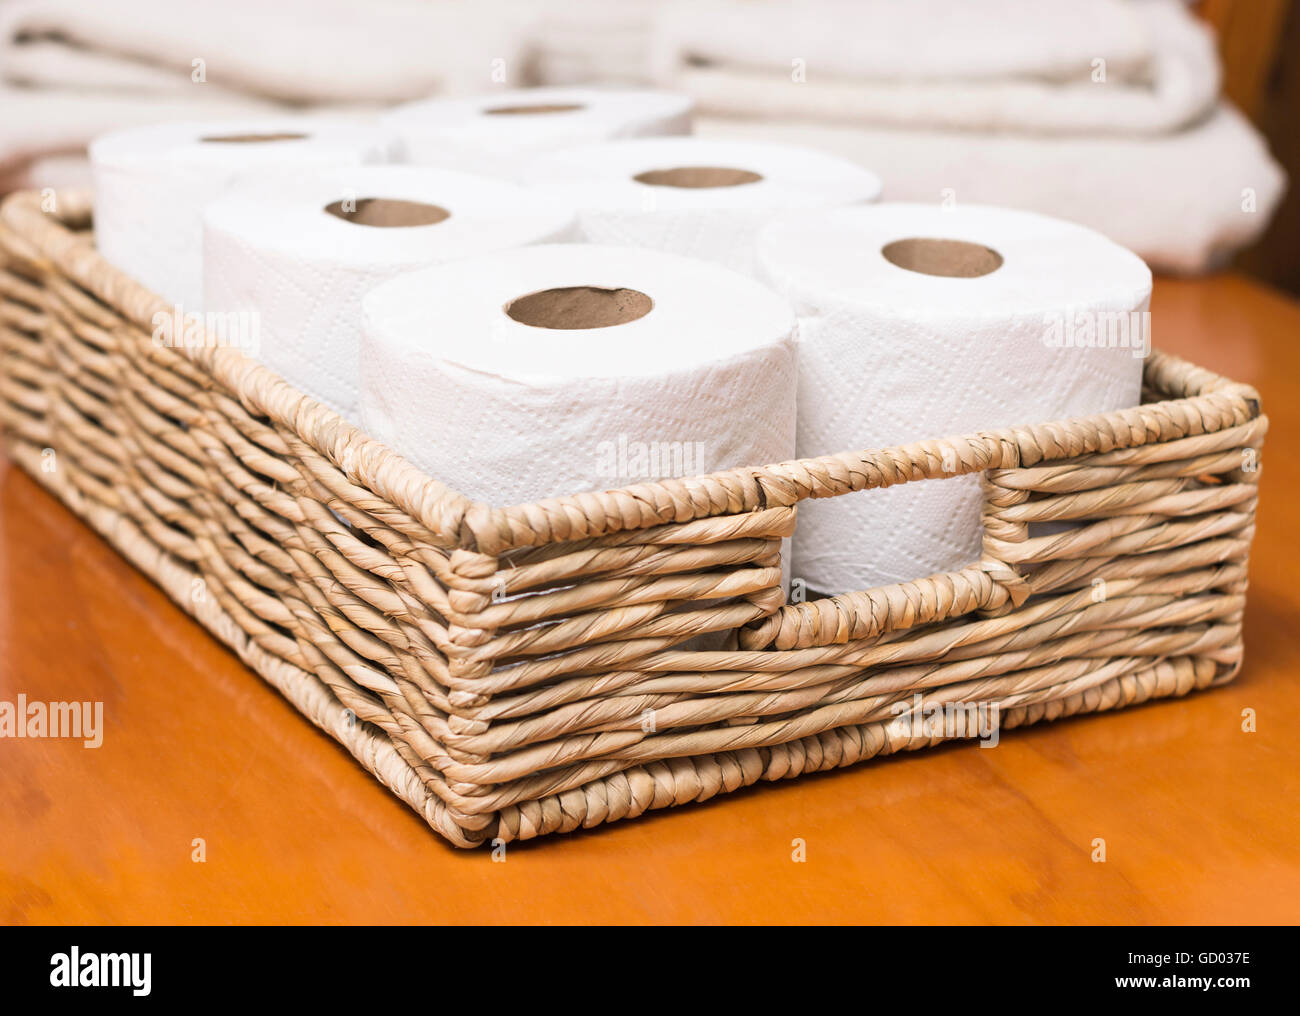 Rotoli di carta igienica sul cesto di vimini Foto Stock